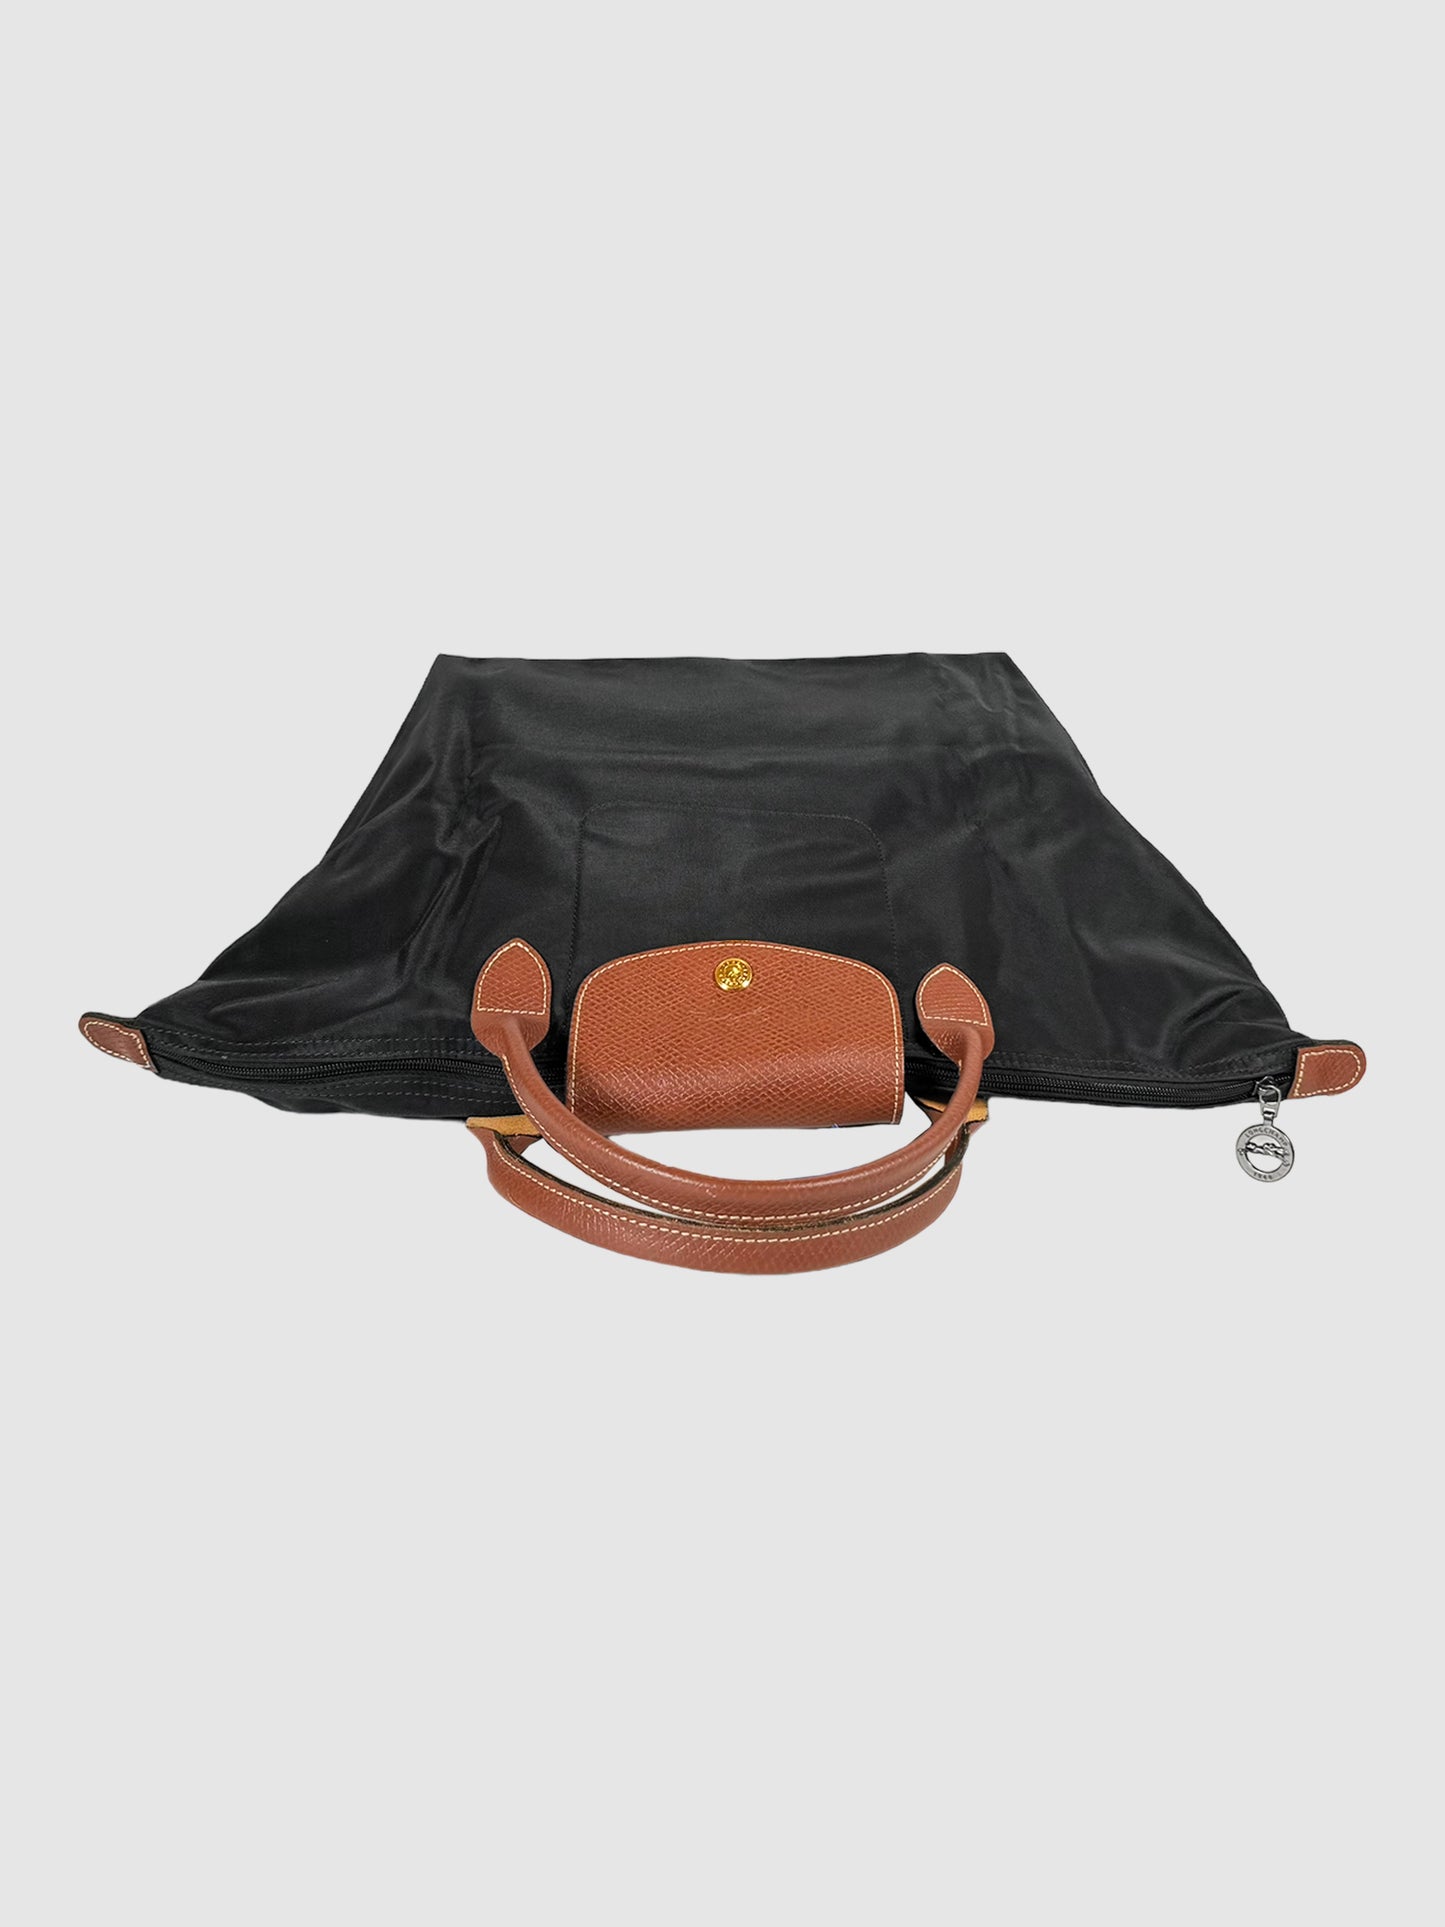 Medium Le Pliage Original Top Handle Bag